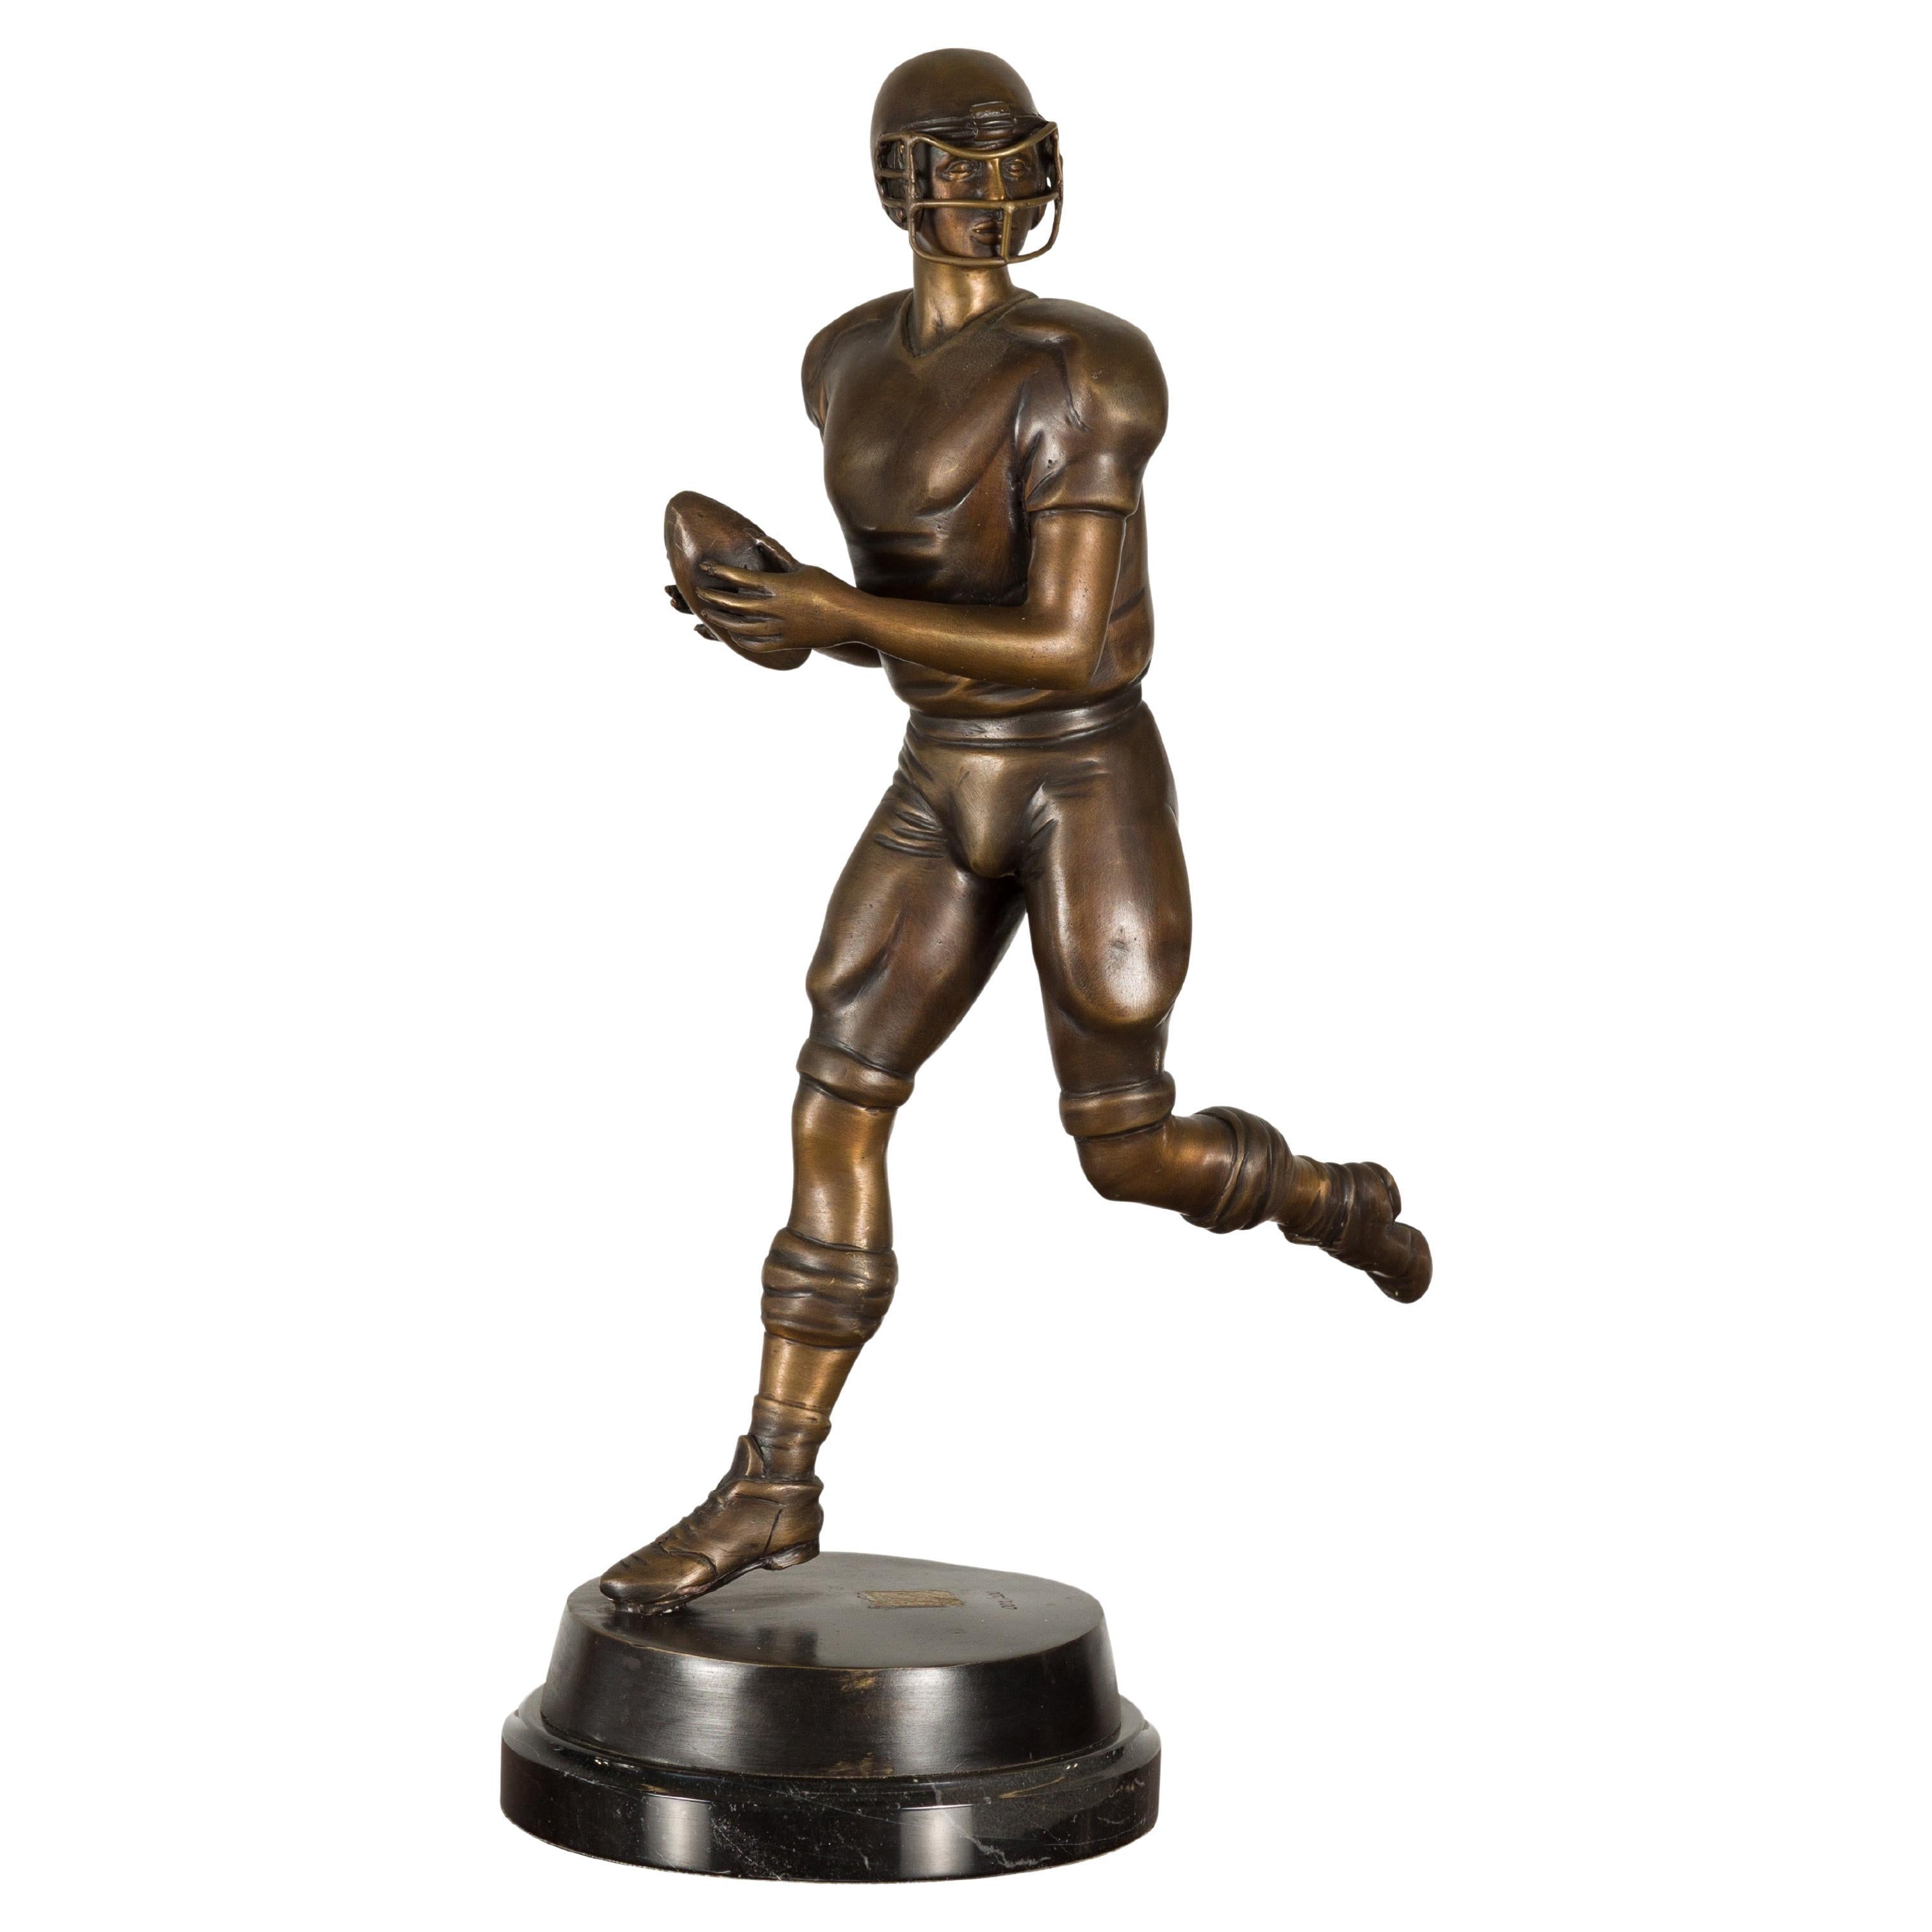 Statuette en bronze coulé à la cire perdue de Quarterback sur socle circulaire, édition limitée